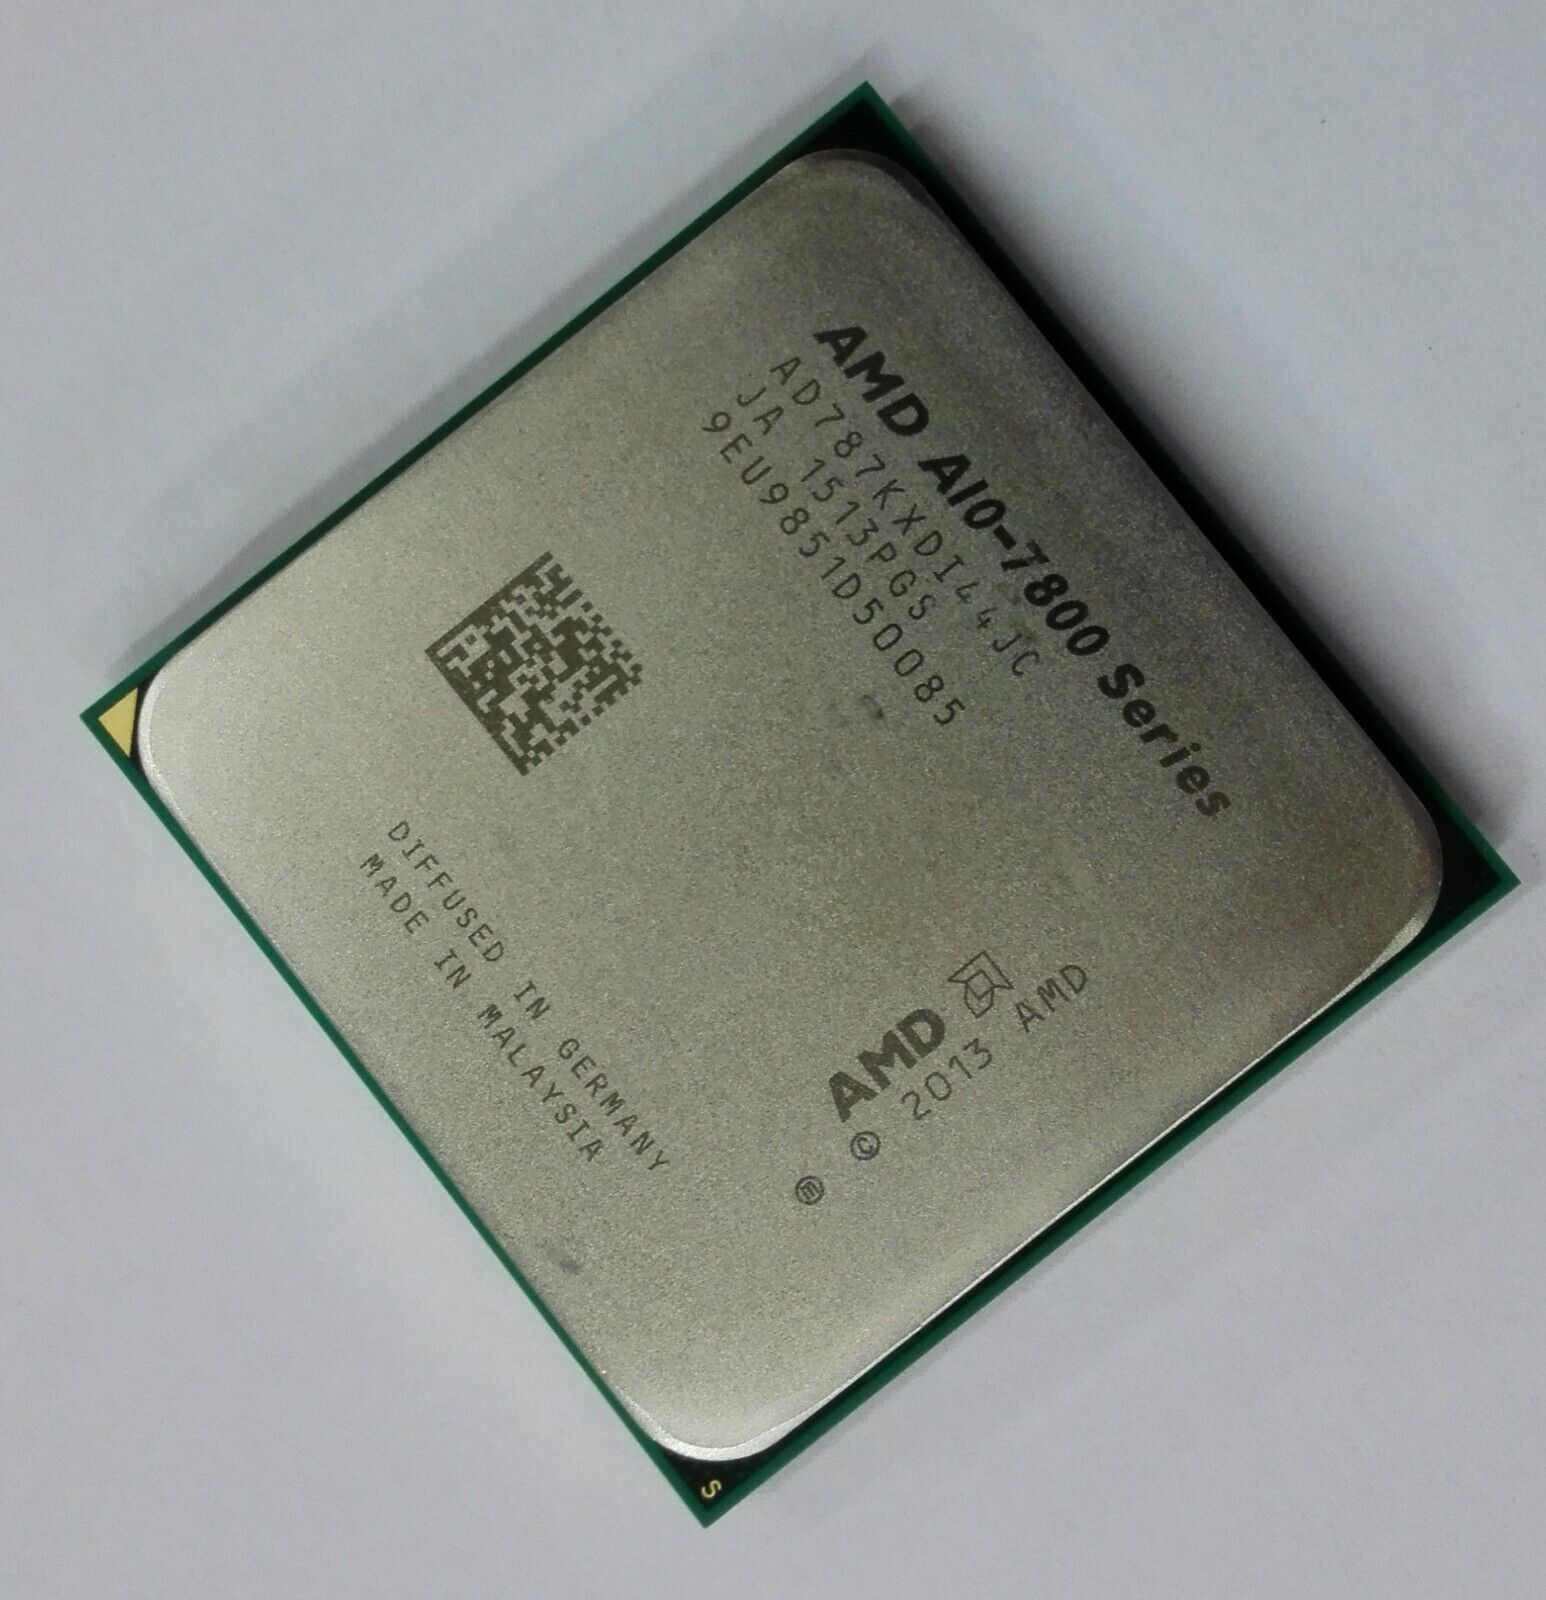 AMD A10 7890K 7870K 7860K 7850K 7800B 8750B Quad-Core Desktop CPU Socket FM2+APU